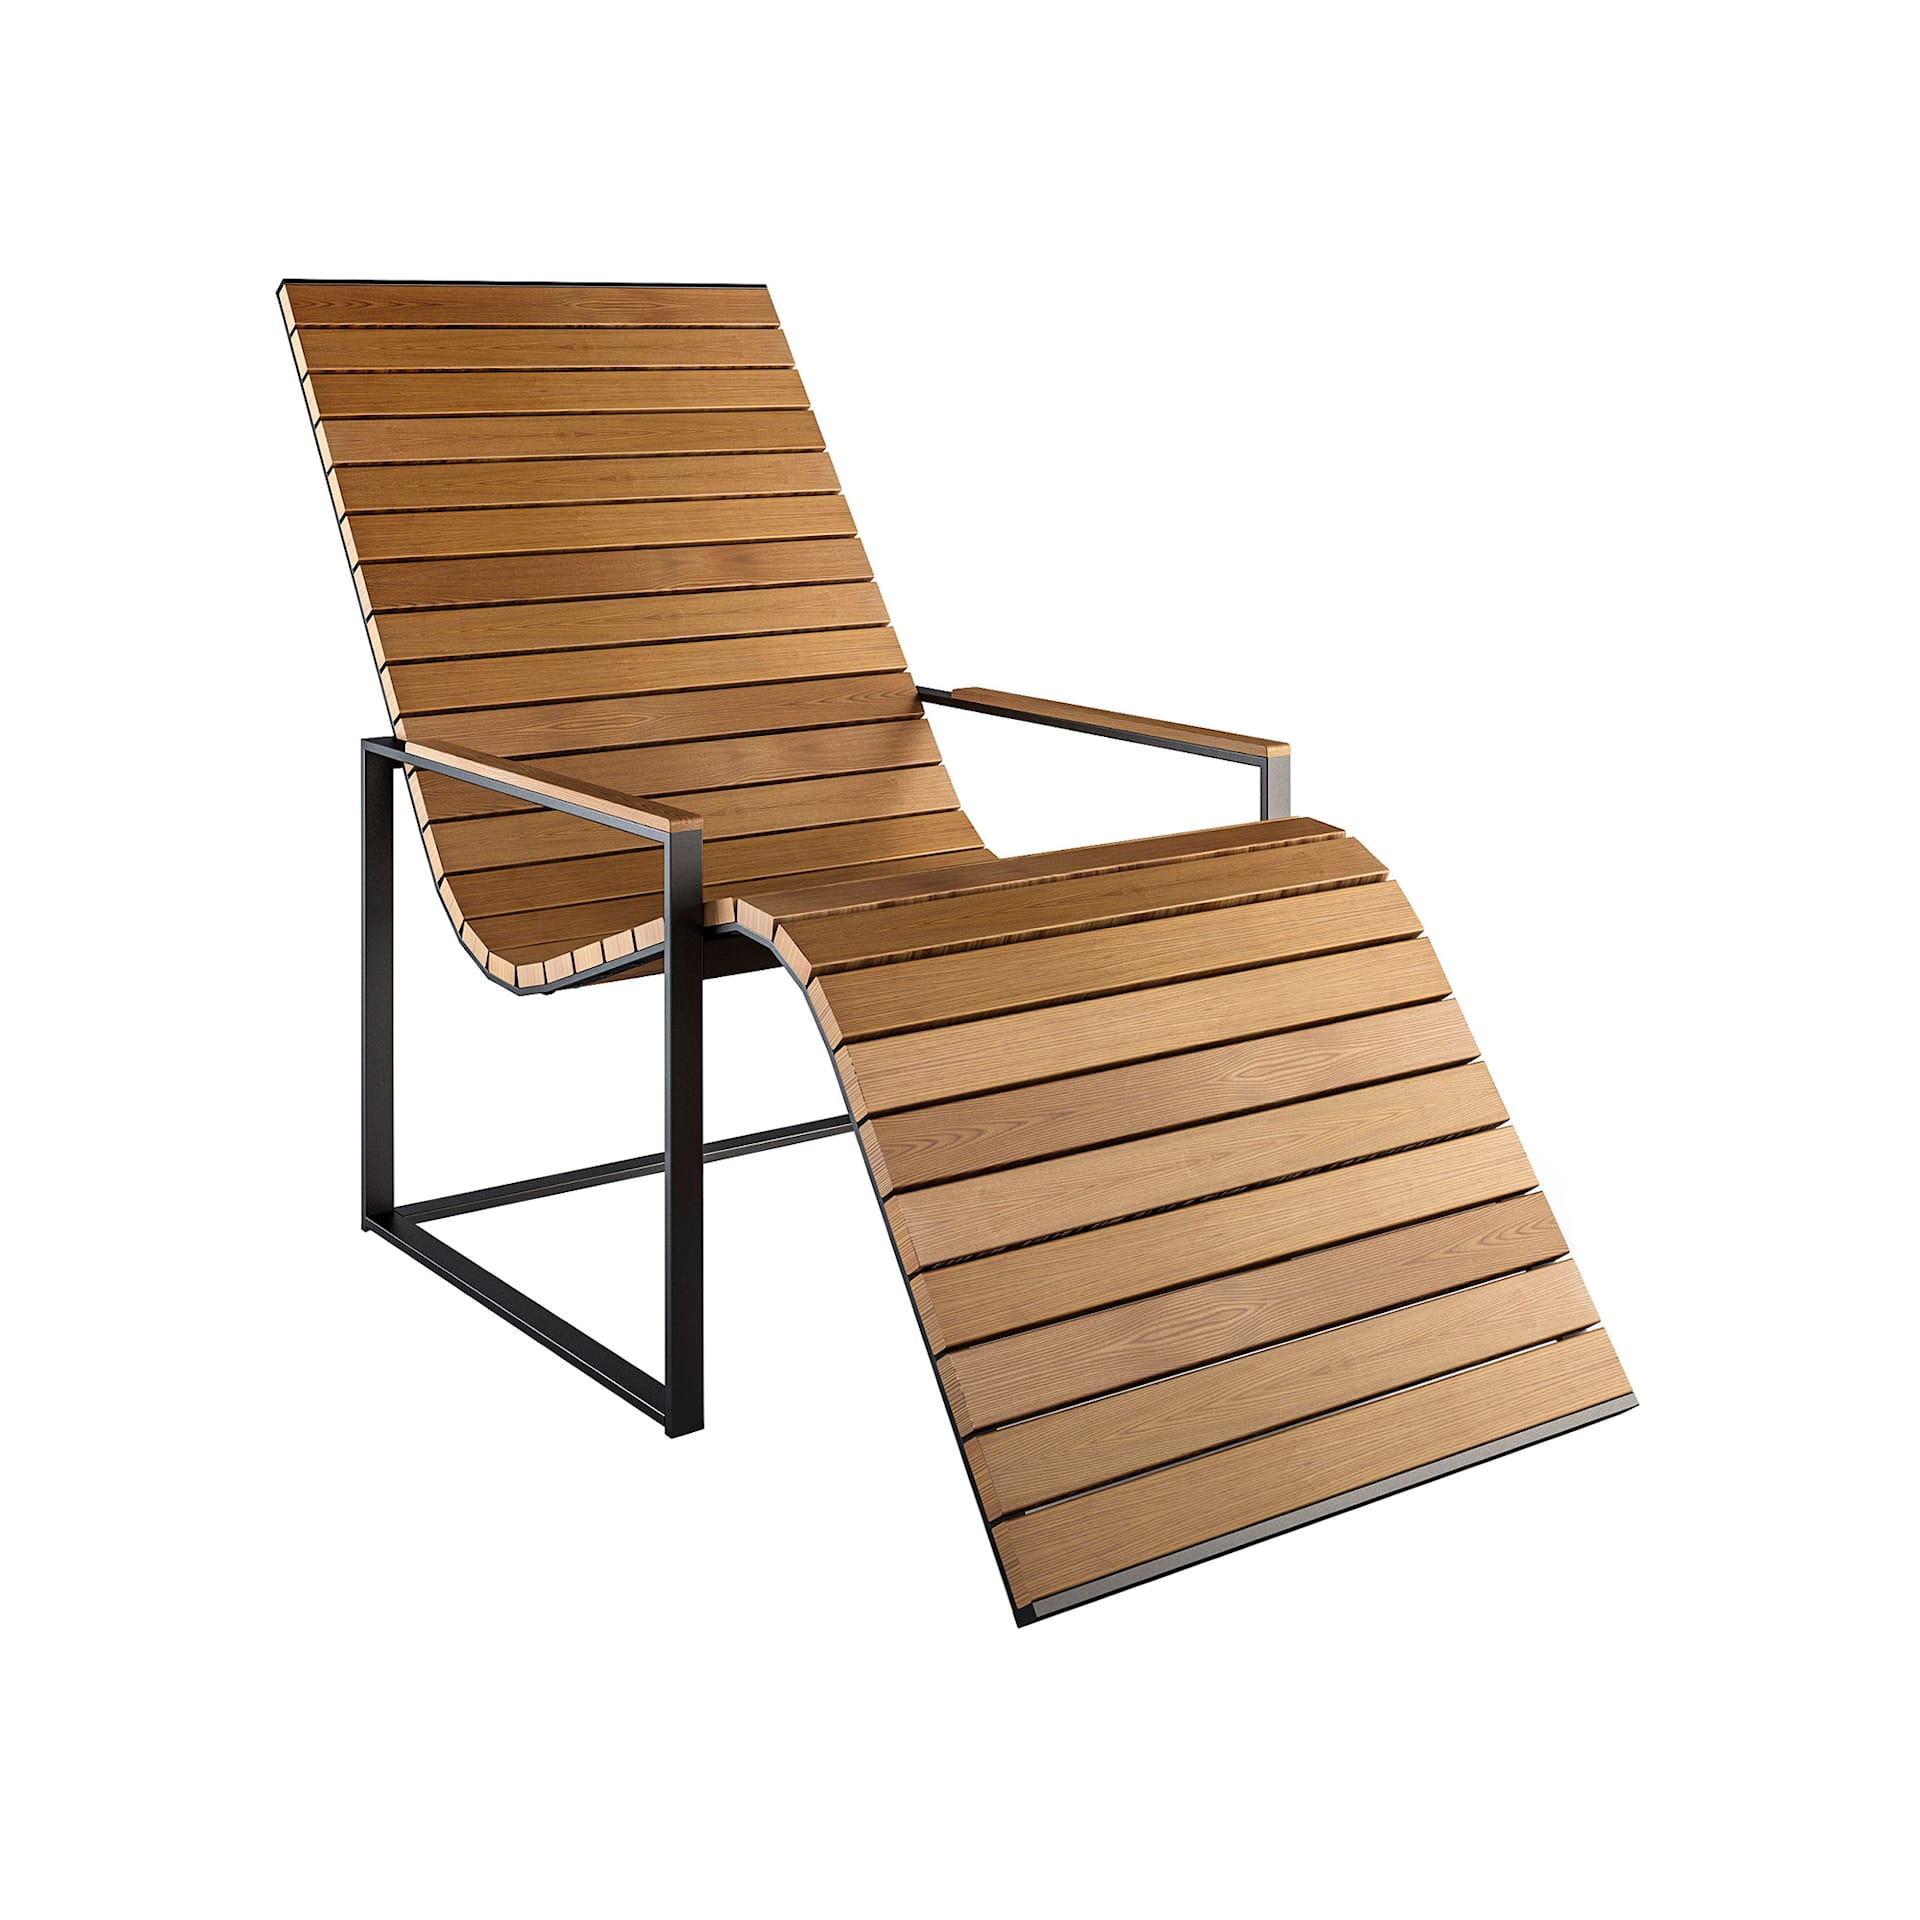 Garden Sun Chair - Röshults - NO GA